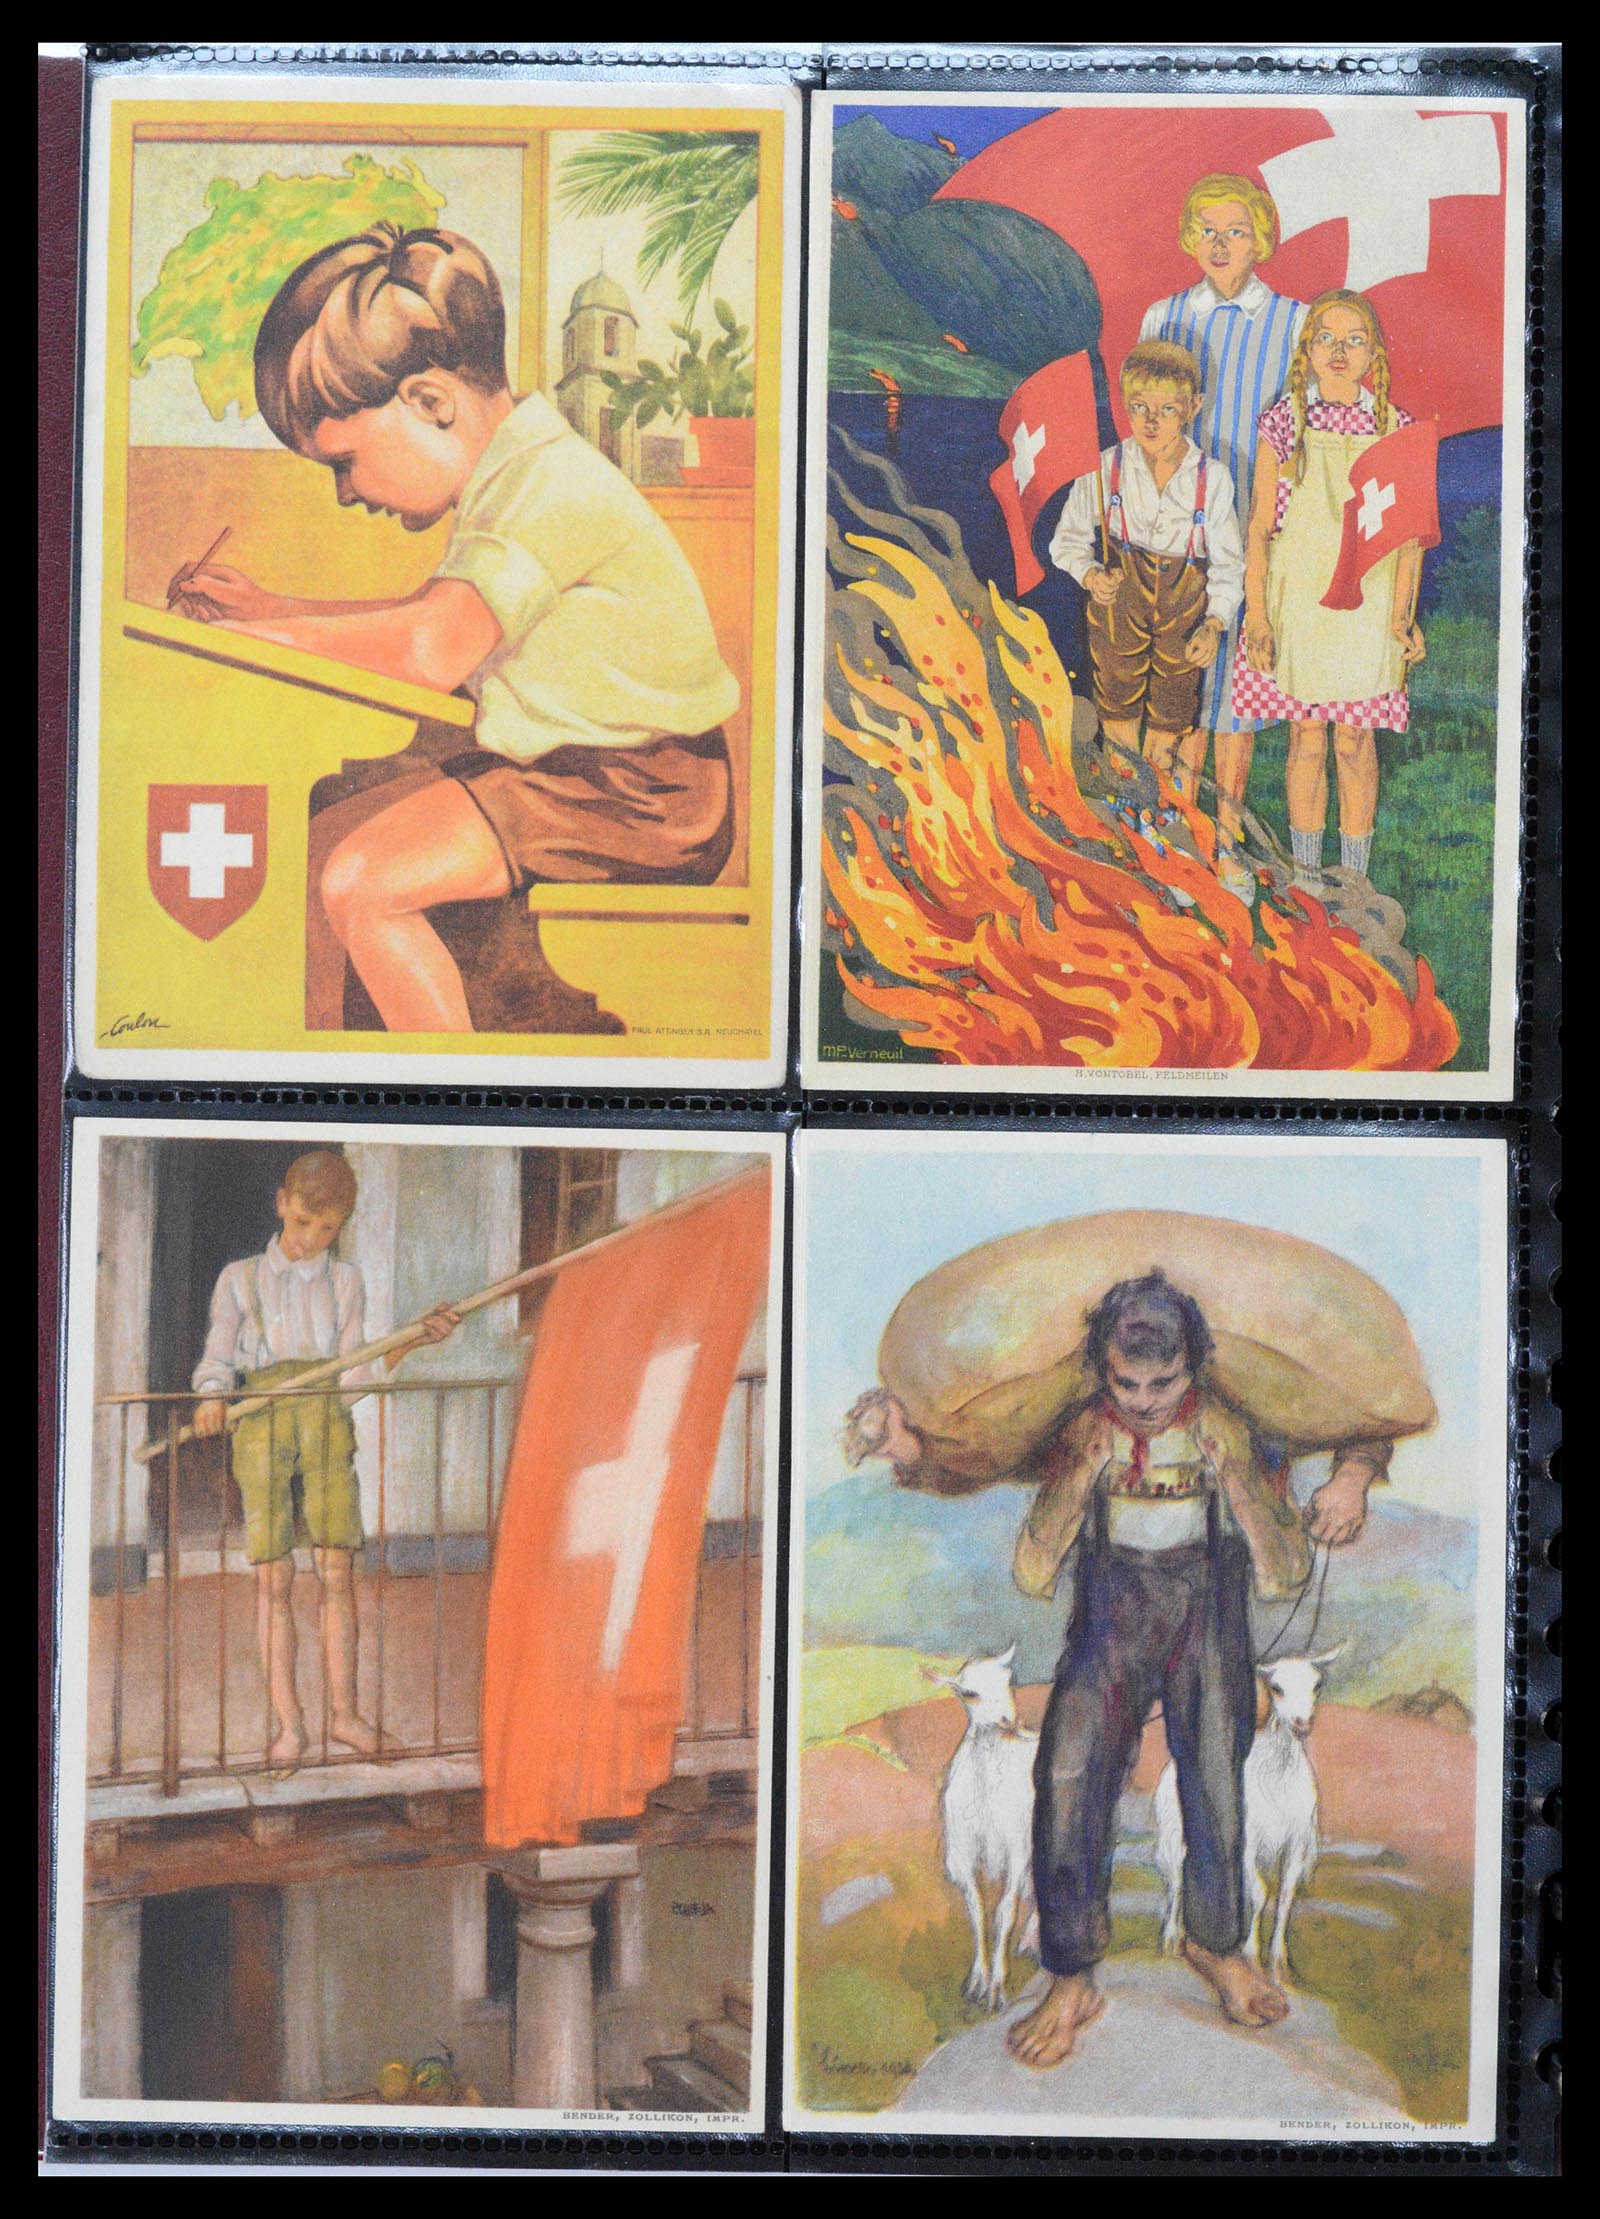 39433 0014 - Stamp collection 39433 Switzerland Bundesfeier cards 1910-1937.